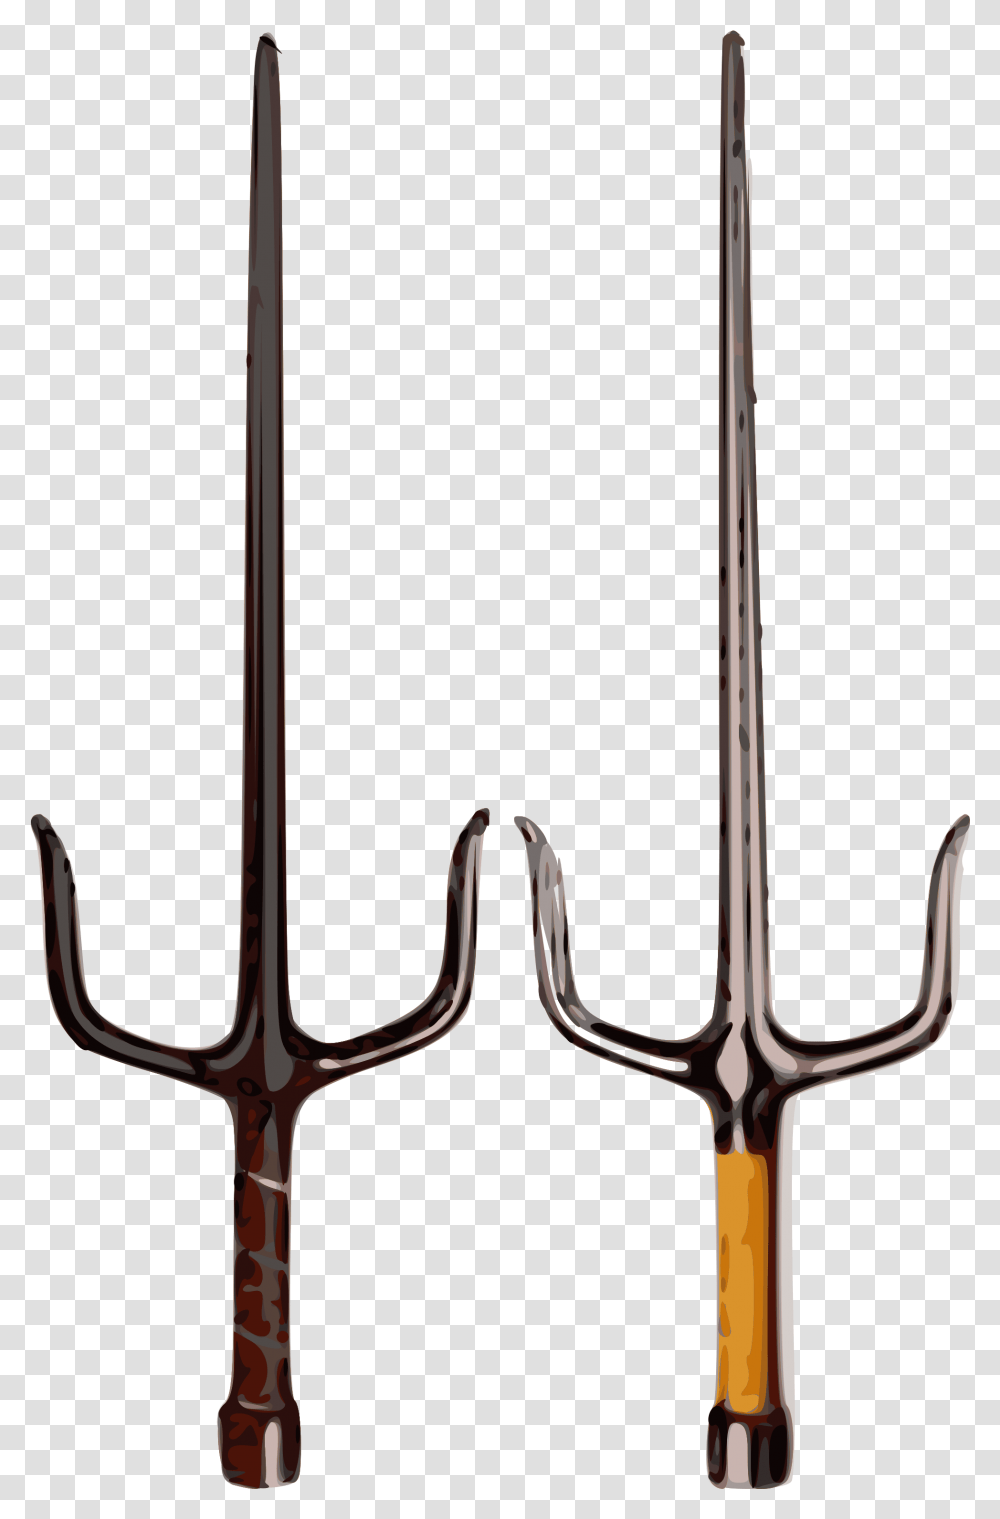 Sai Weapon, Trident, Emblem, Spear Transparent Png